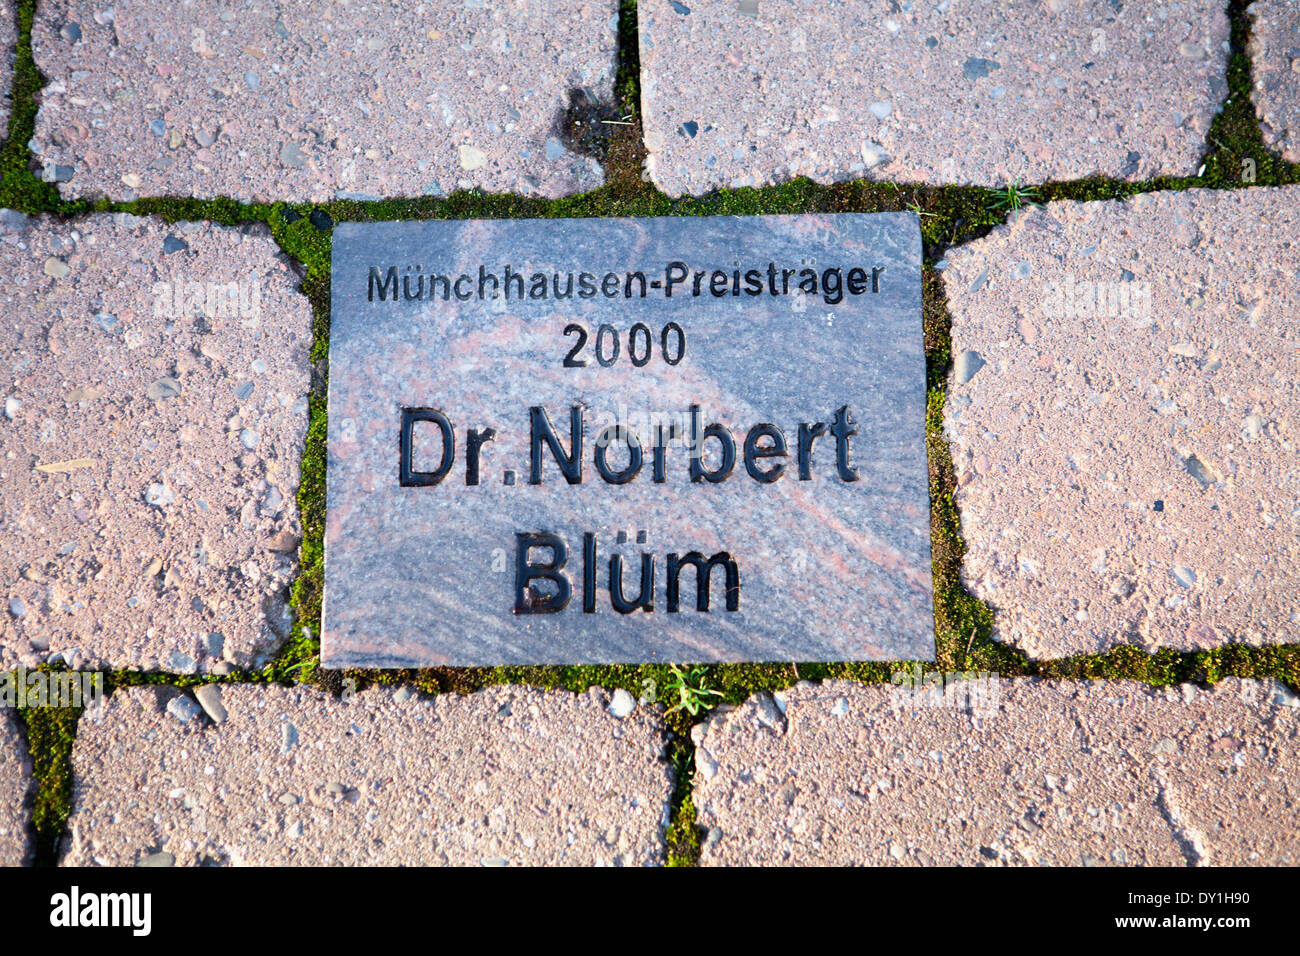 Baron Muenchhausen award en 2000, le Dr Norbert Blüm, Bodenwerder, Weserbergland, Basse-Saxe, Allemagne Banque D'Images